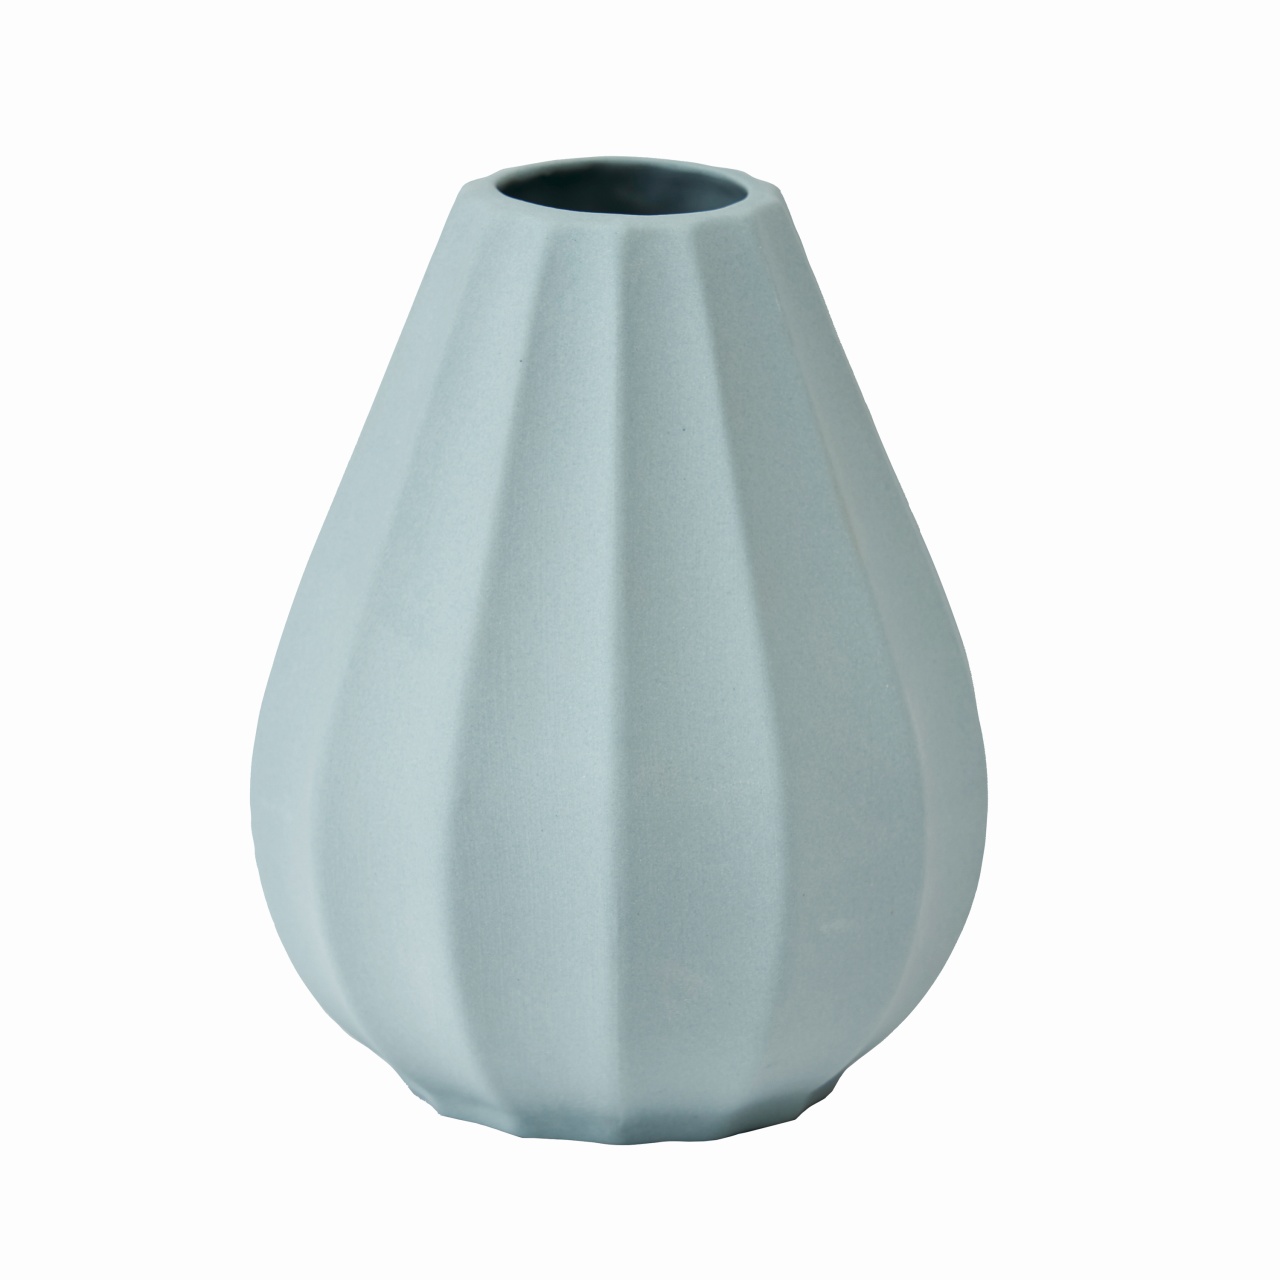 マイフラ 通販 Seva アクアミューm 花瓶 陶器 花器 Gw アクアミュー 花器 花瓶 フレーム 天然素材 ベース 全国にmagiq 花器 花資材などをお届けします